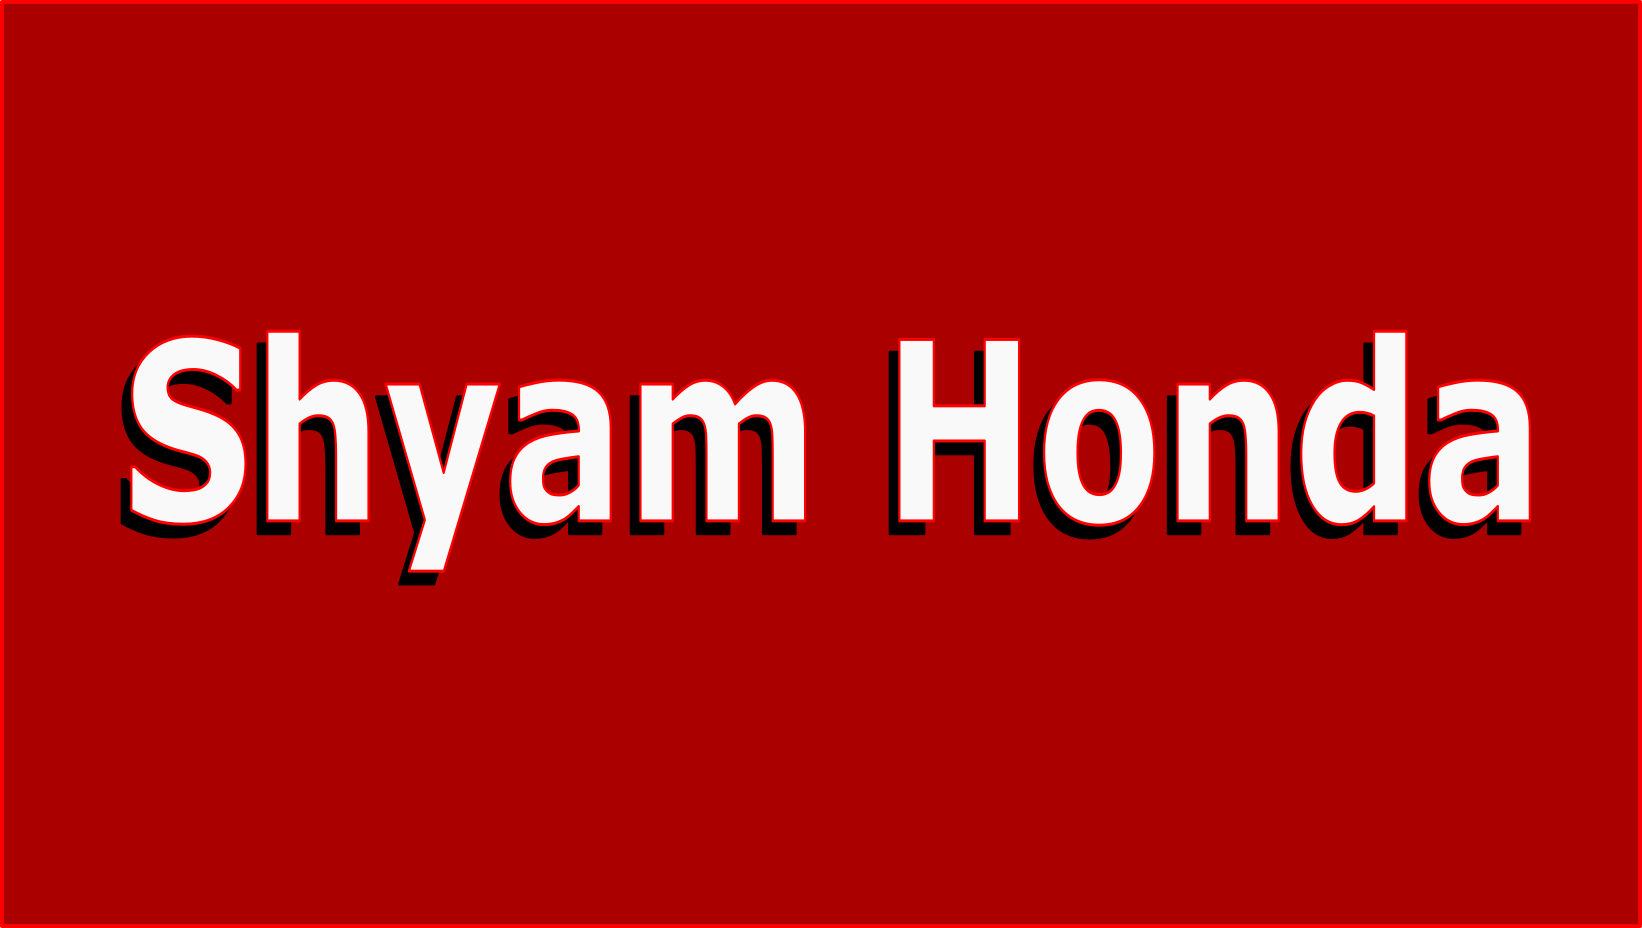 Shyam Honda